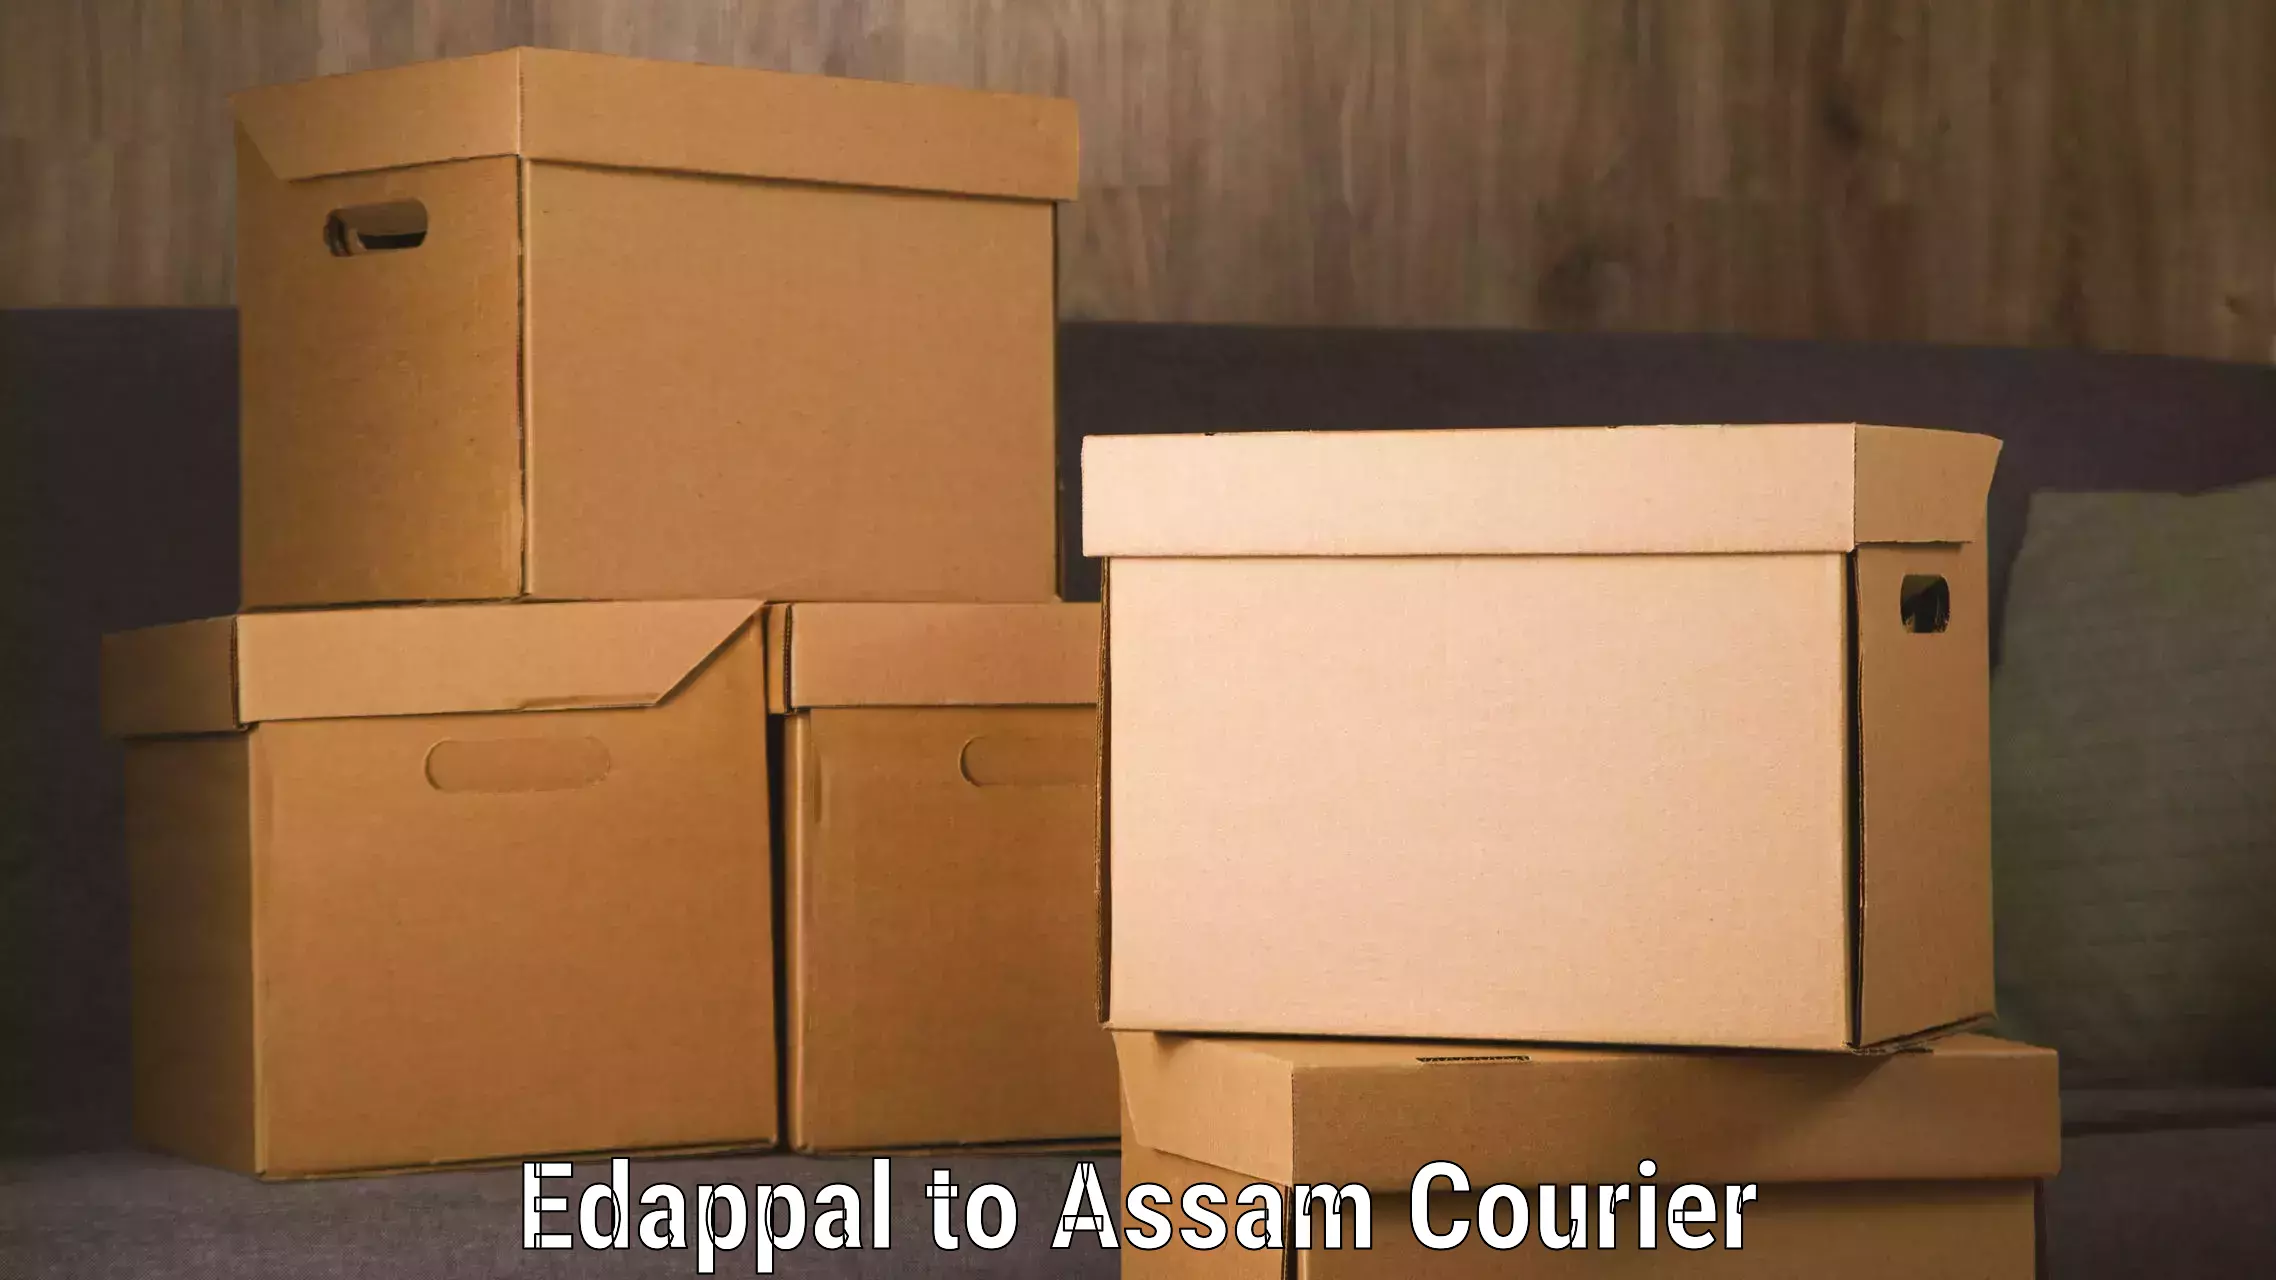 Modern courier technology Edappal to Hailakandi